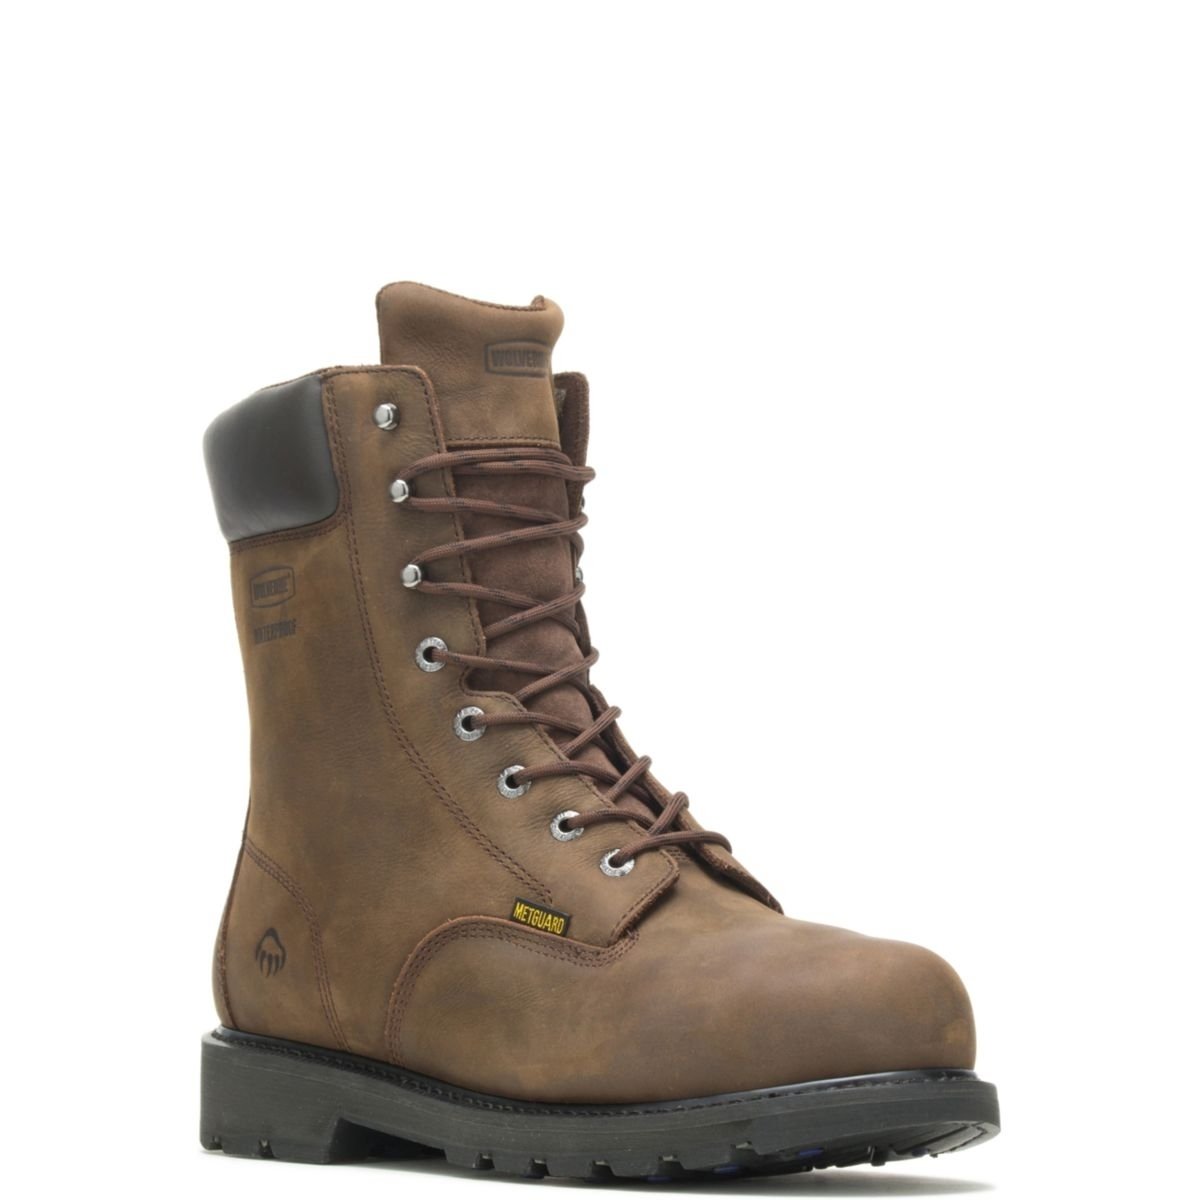 WOLVERINE Men's McKay 8 Waterproof Steel Toe Work Boot Brown - W05680 10 BROWN - BROWN, 13